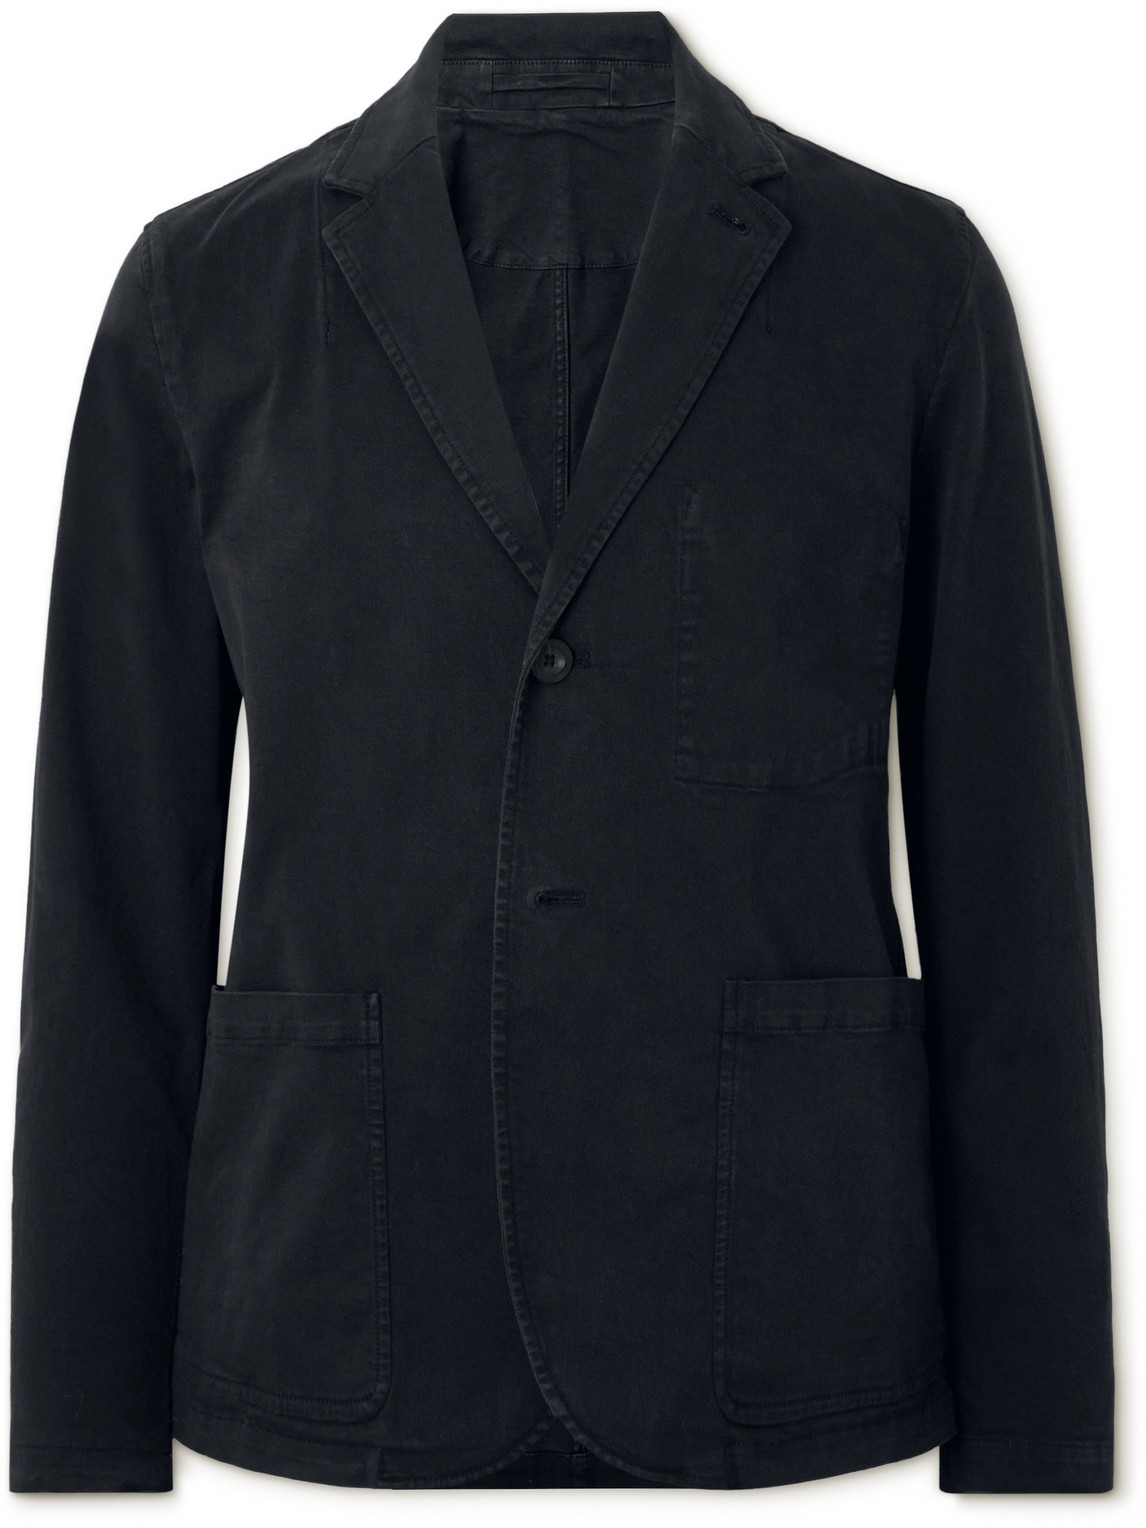 Mr P Garment-dyed Cotton-blend Twill Blazer In Black